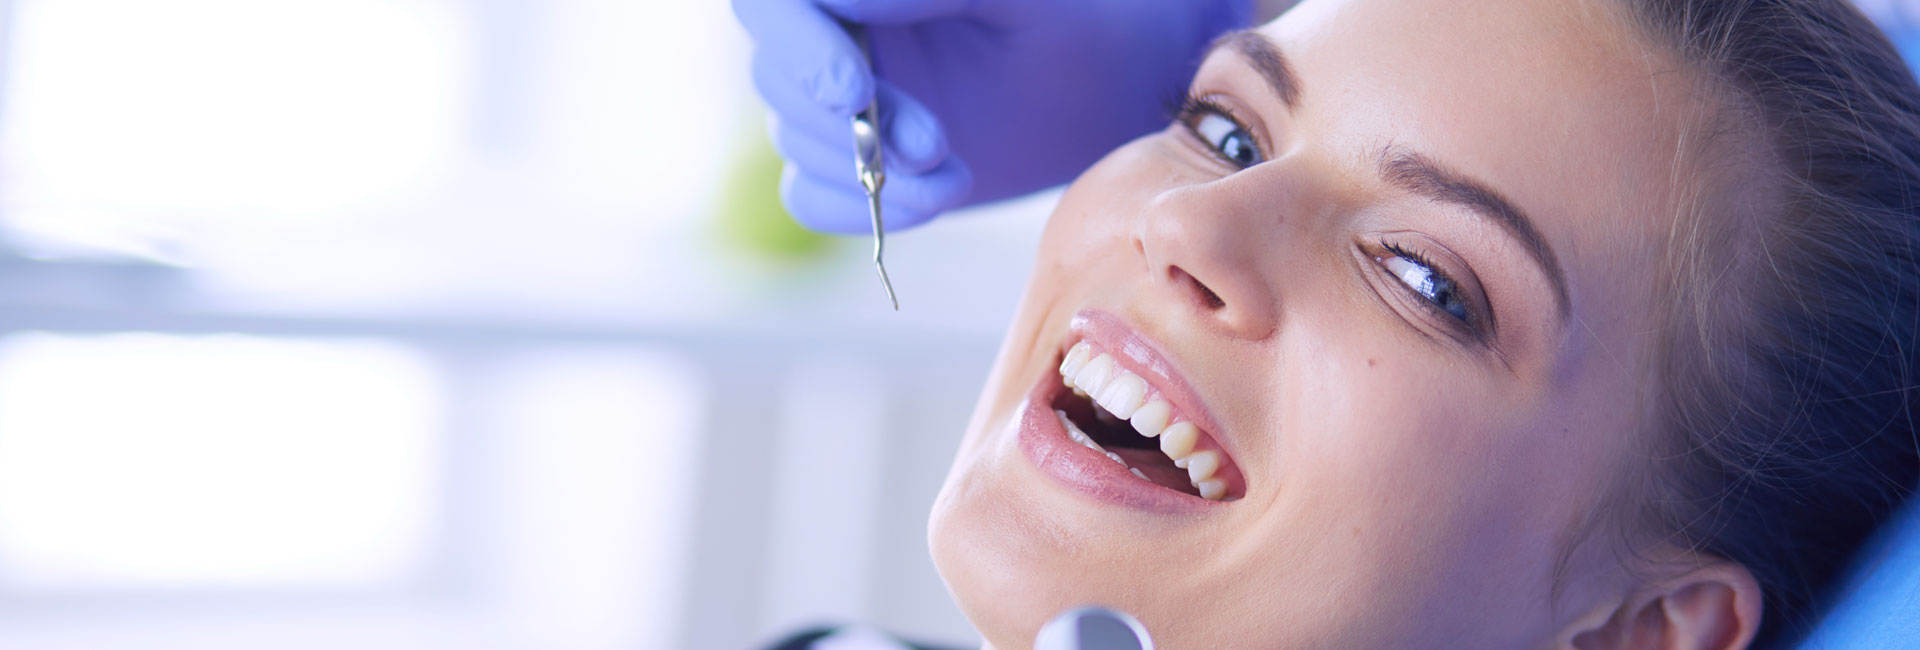 Dentist examining patient teeth